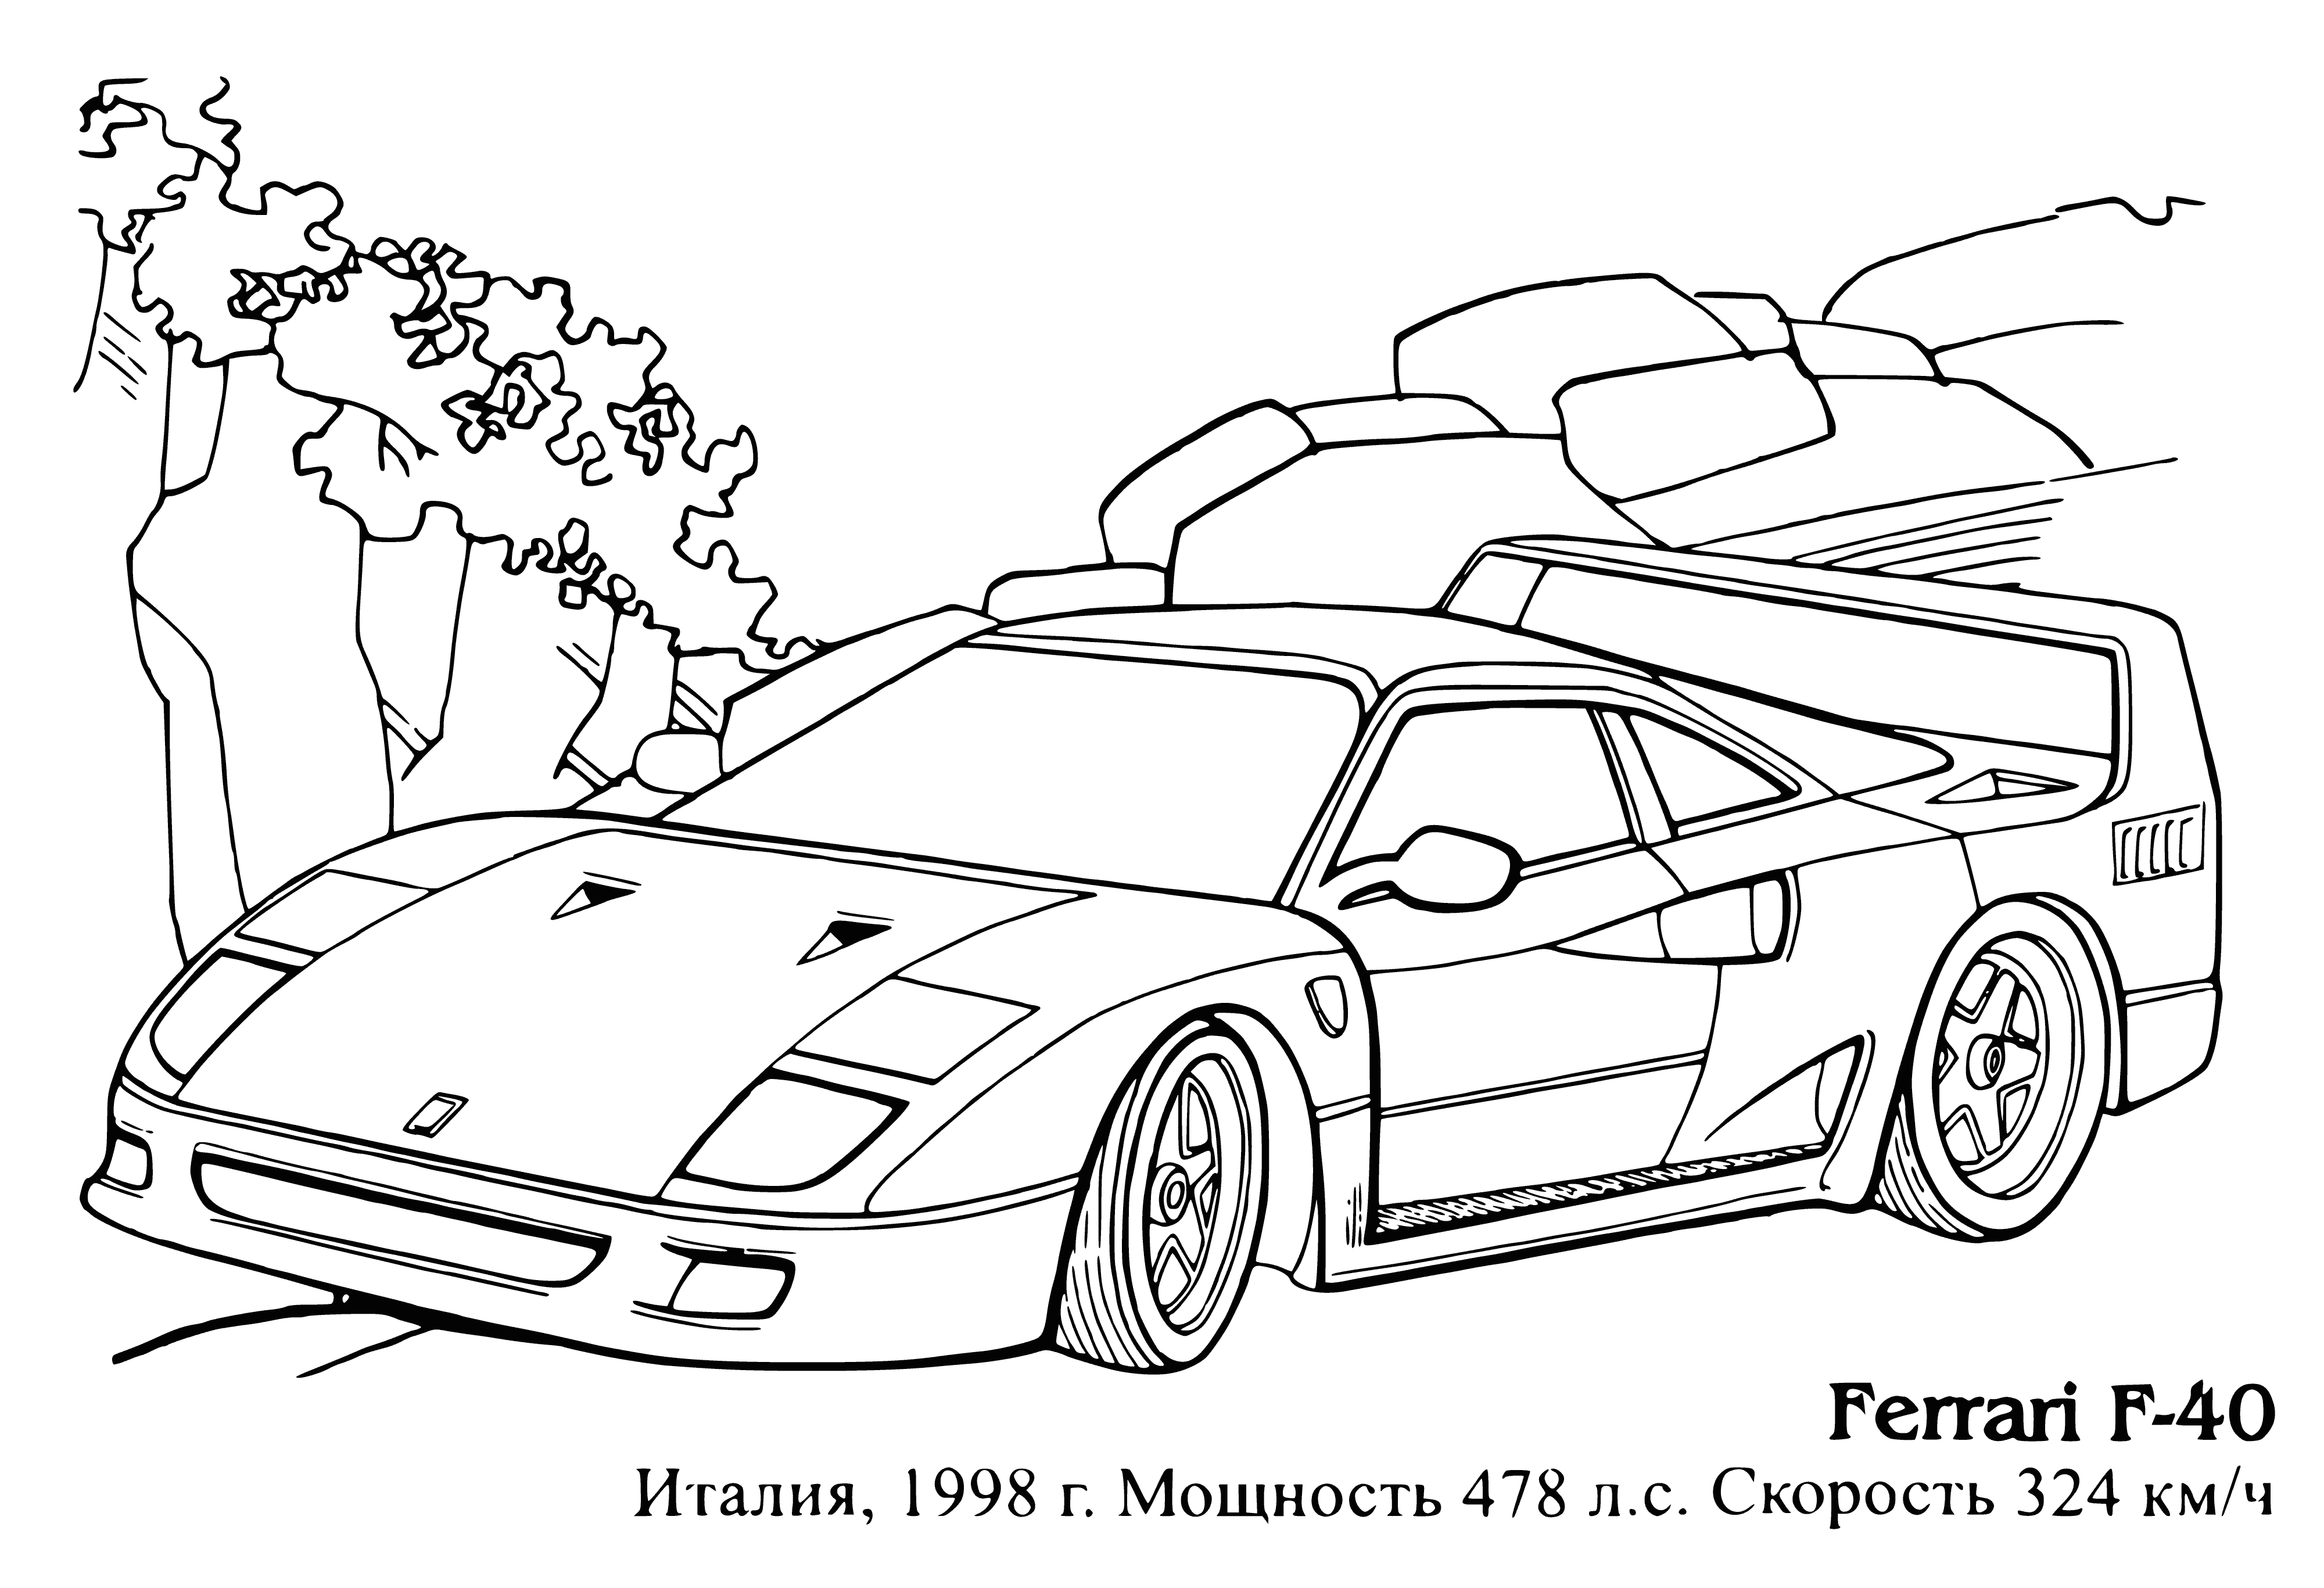 Ferrari F-40 coloring page